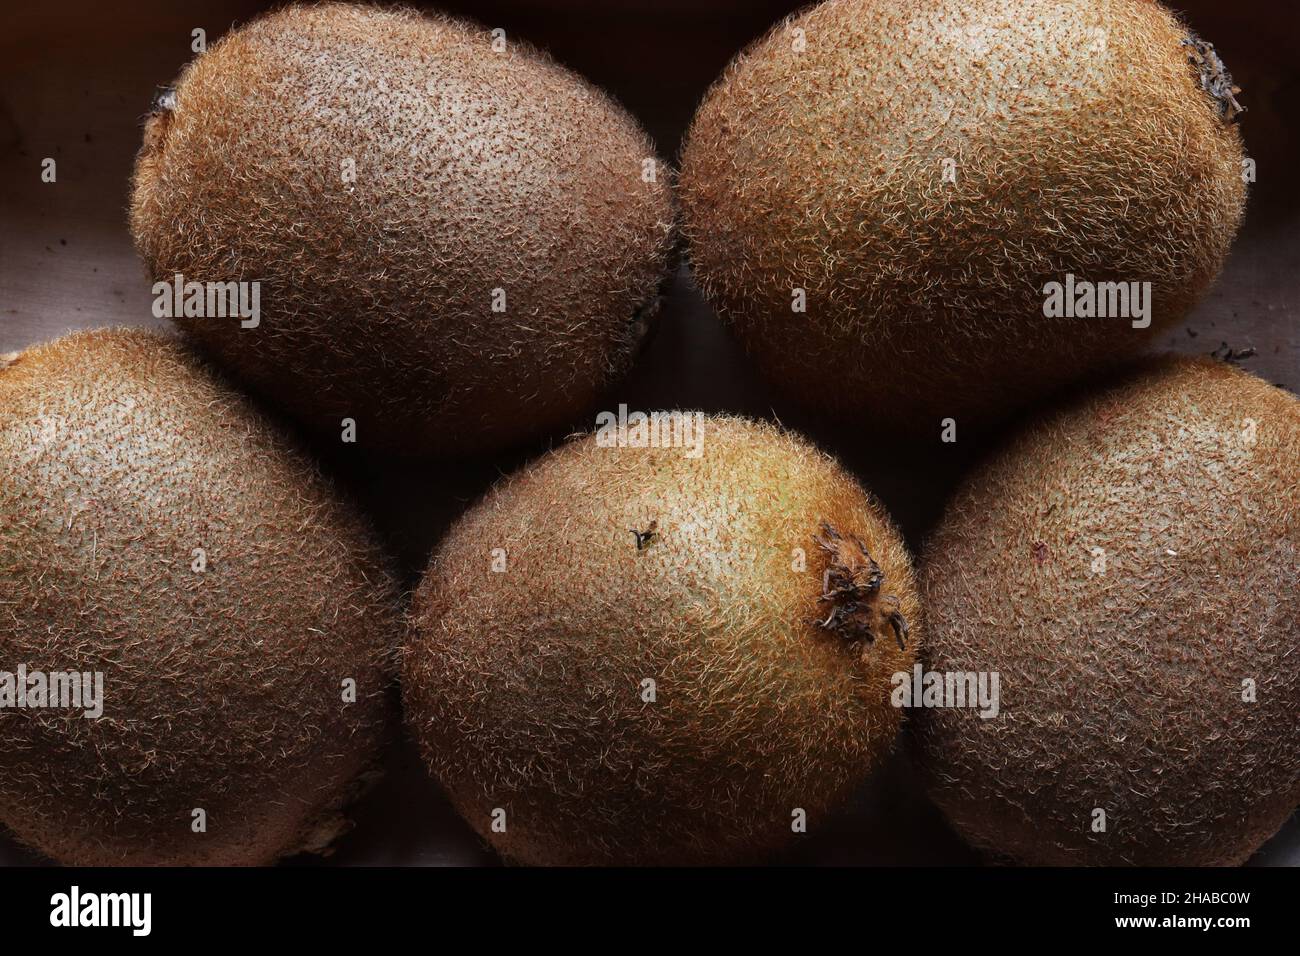 Fotos von Kiwis für den Hintergrund von Lebensmitteln Stockfoto